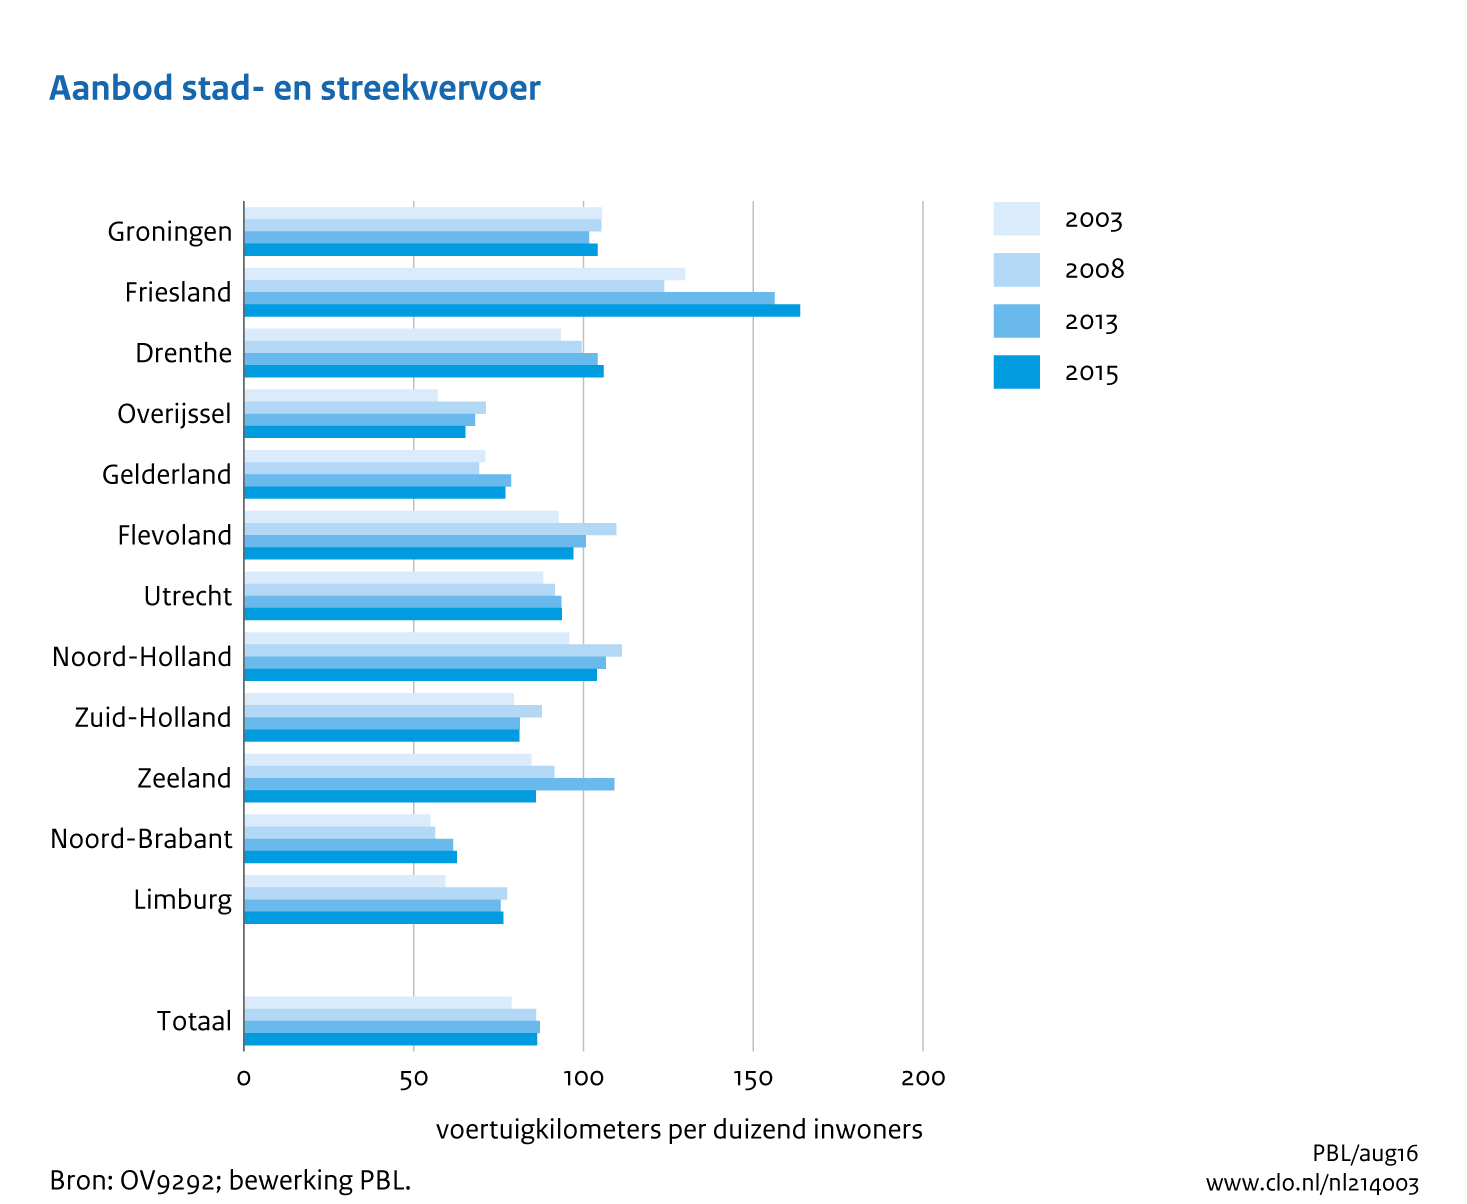 Figuur  Aanbod stad en streekvervoer in voertuigkilometers per 1000 inwoners per provincie, 2003-2015. In de rest van de tekst wordt deze figuur uitgebreider uitgelegd.